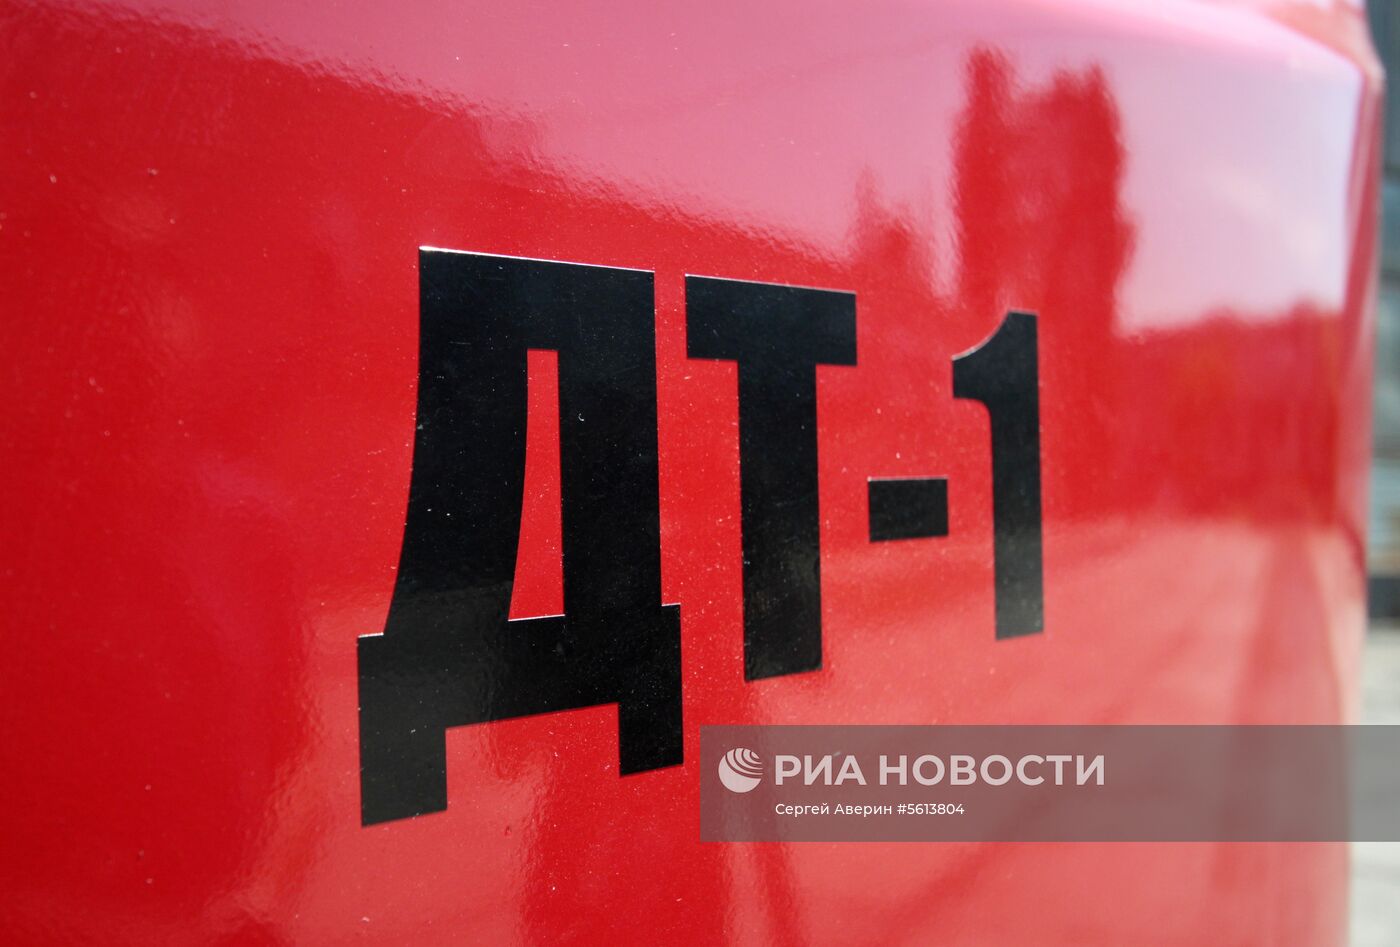 Первый трамвай производства ДНР представили в Донецке